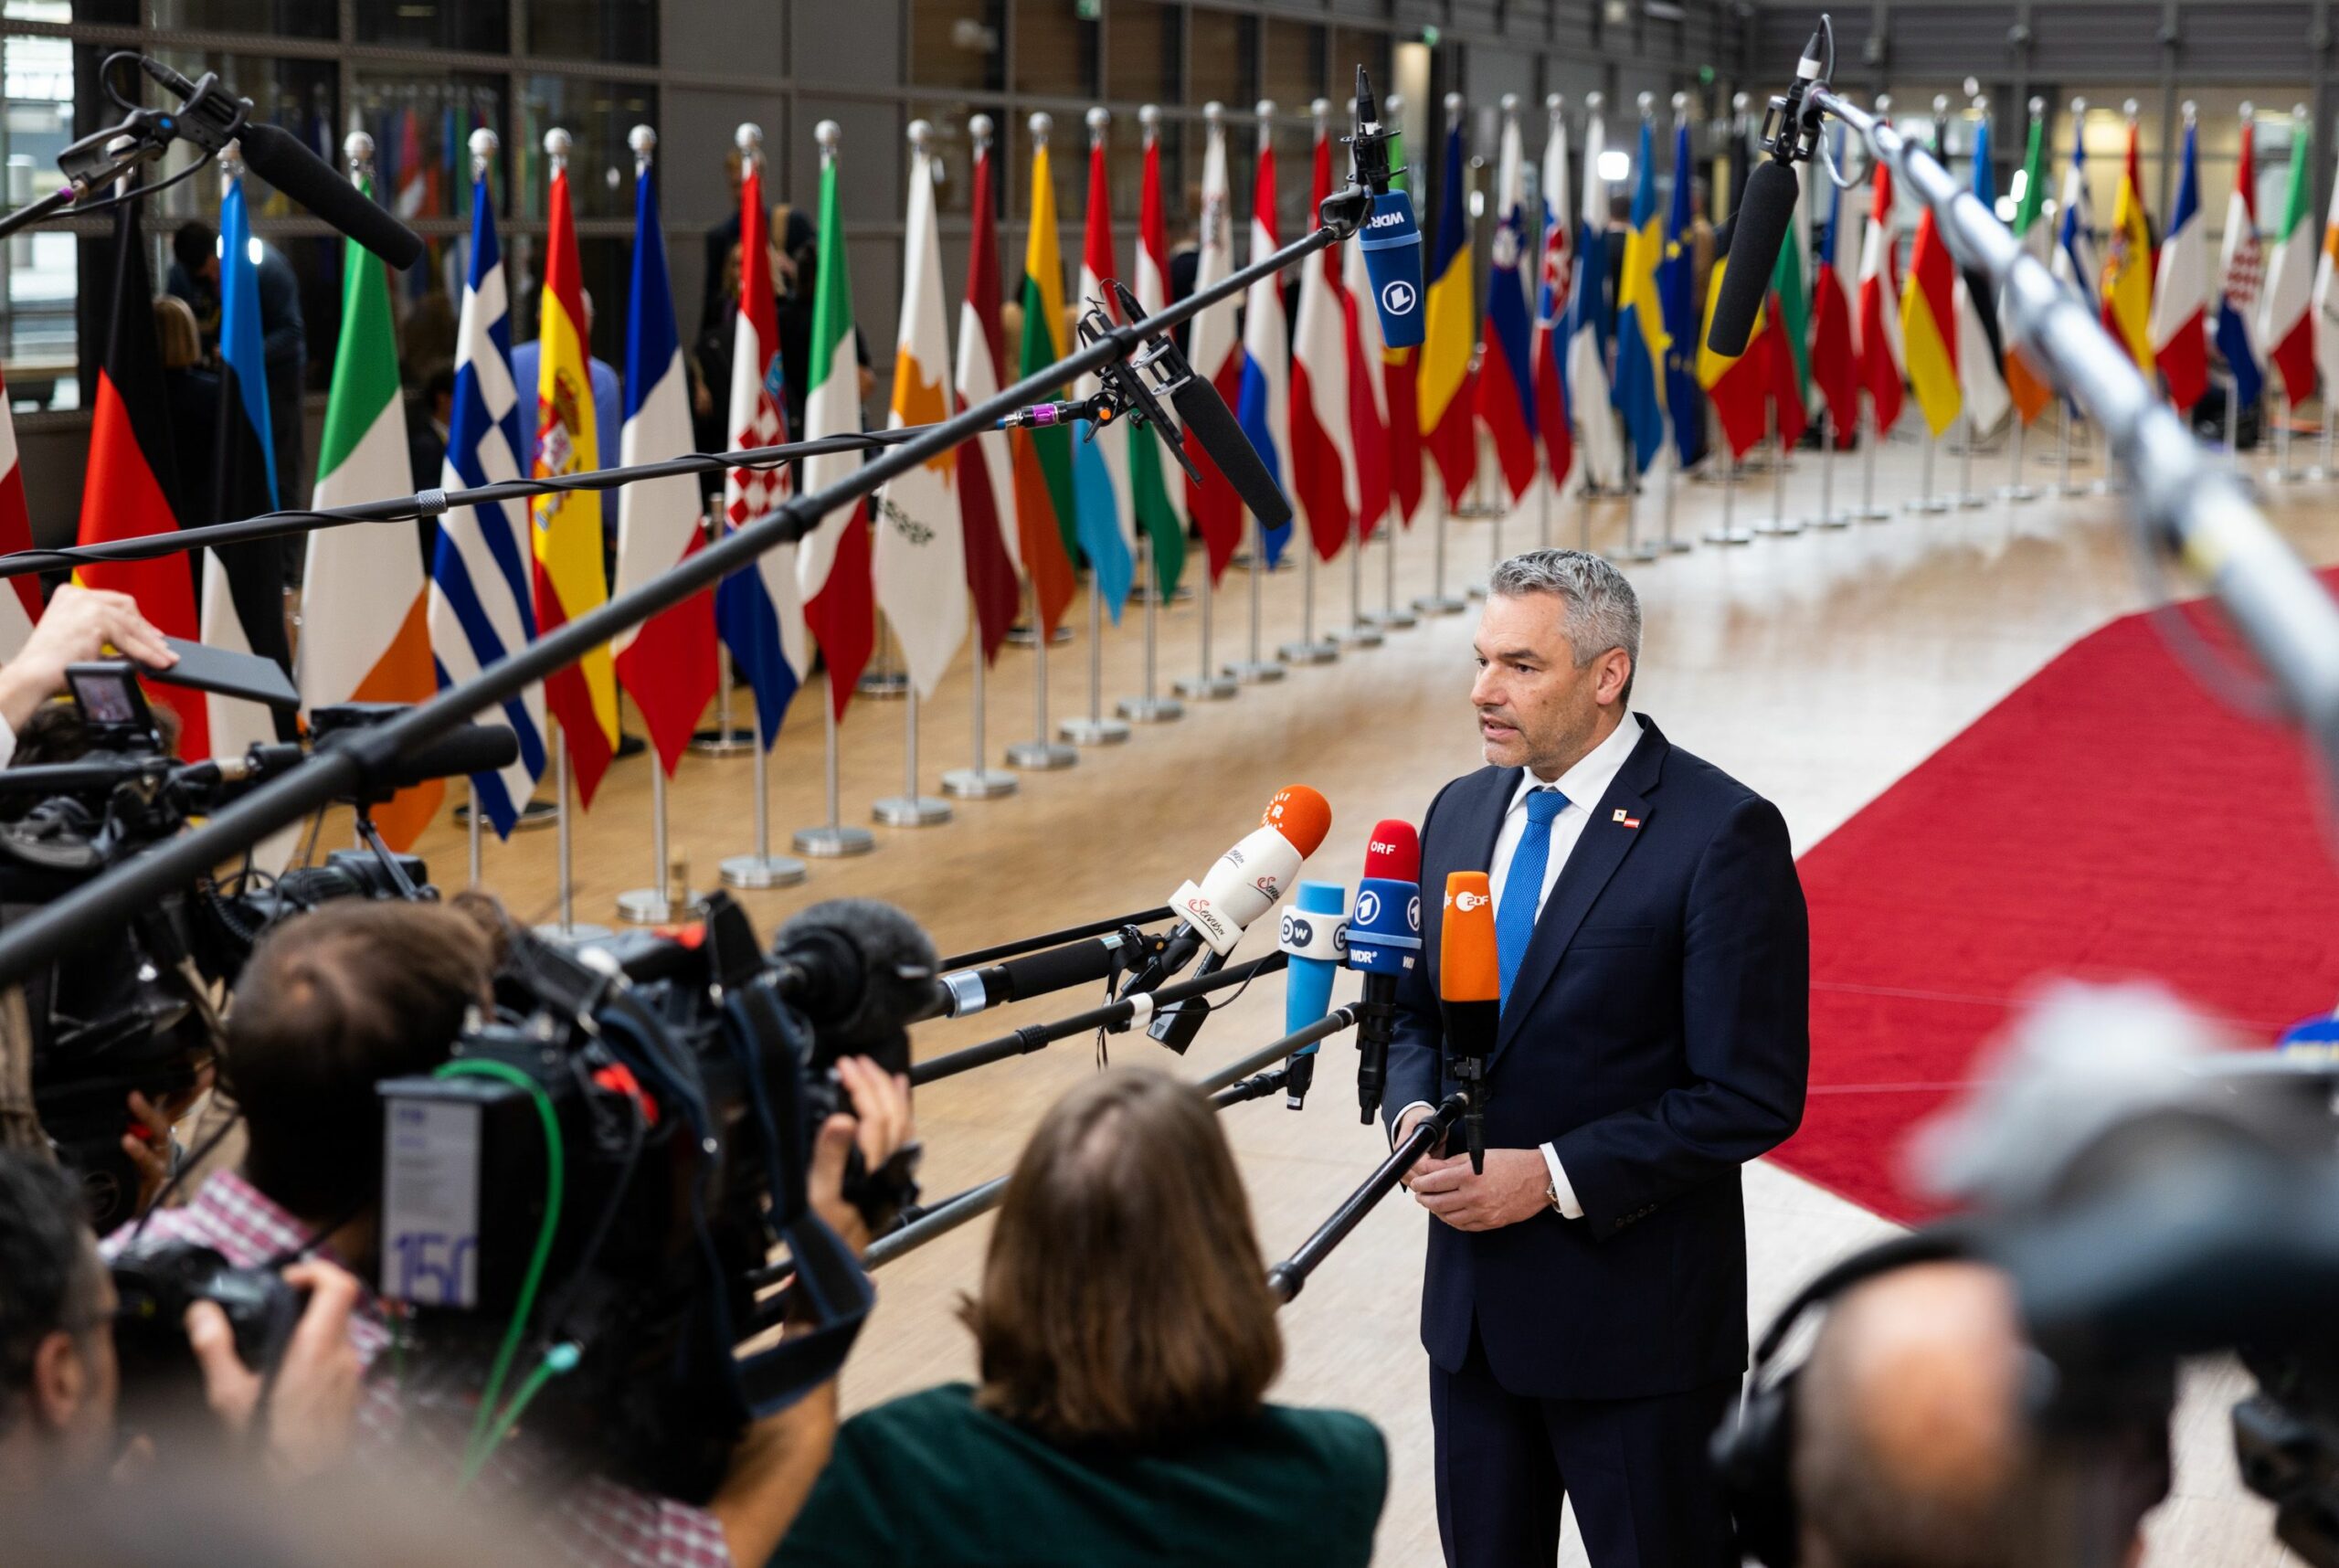 Bundeskanzler Karl Nehammer vor dem Europäischen Rat in Brüssel: Für koordinierten Einkauf von Gas. Foto: Bka/Christopher Dunker